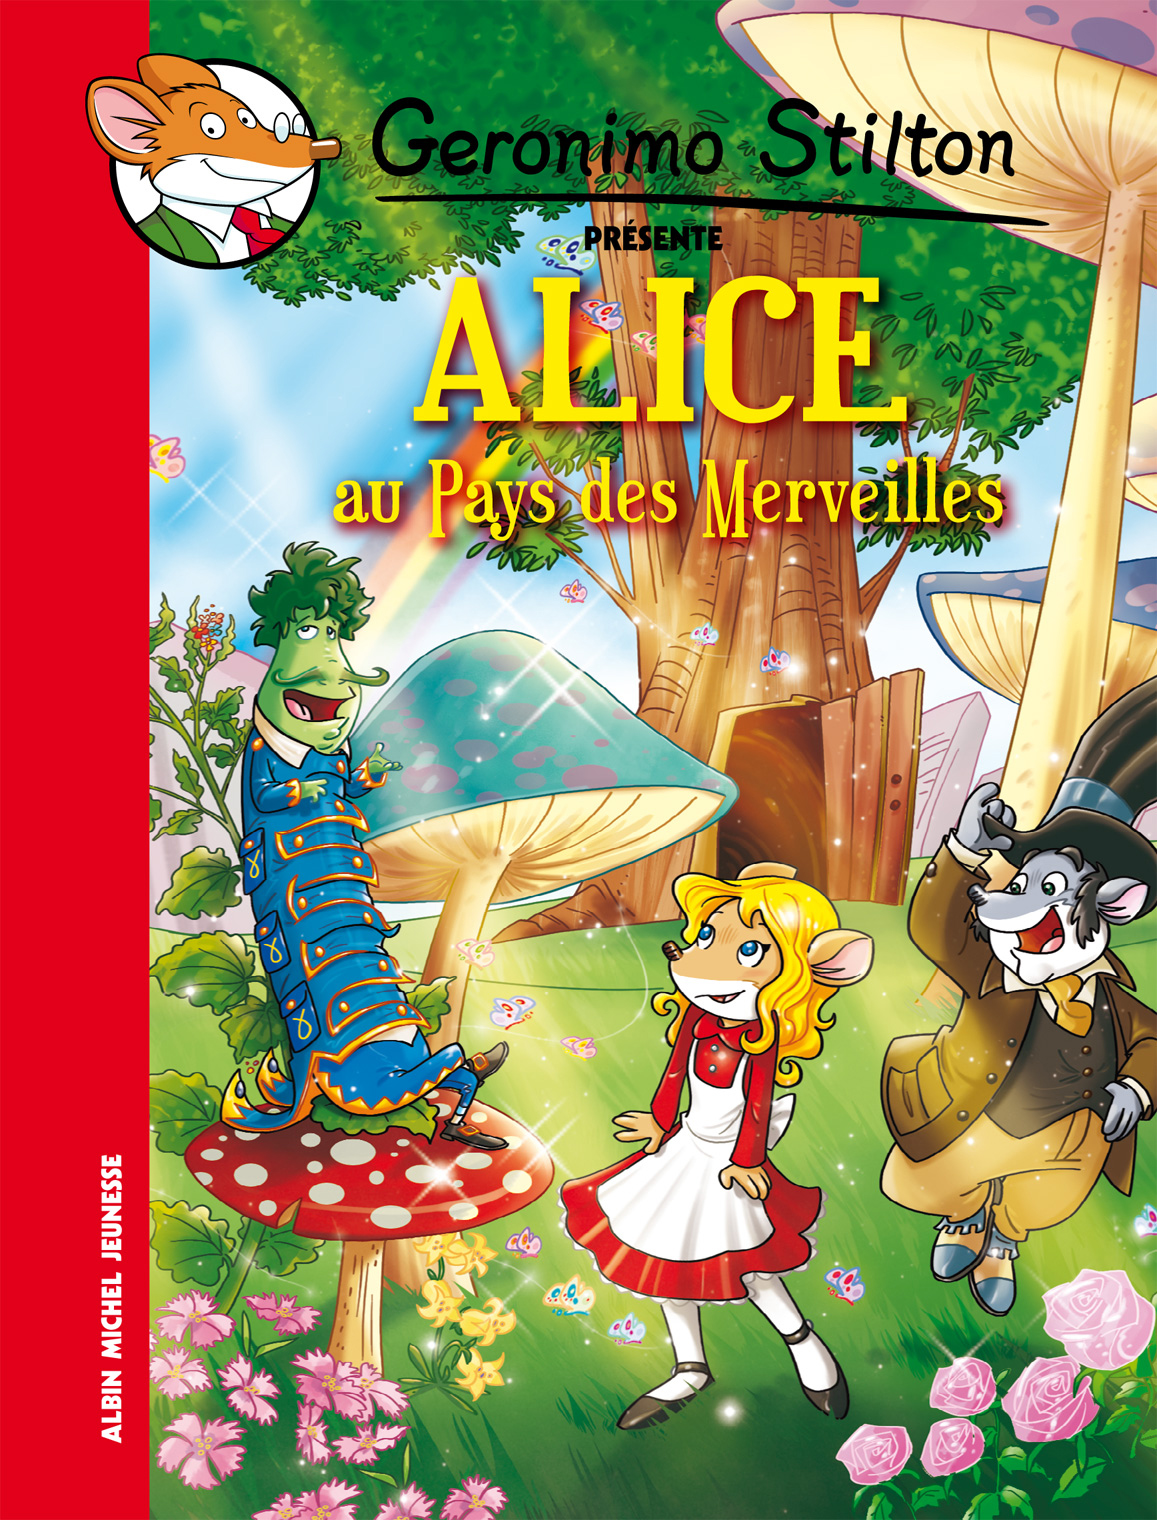 Couverture du livre Alice au pays des merveilles